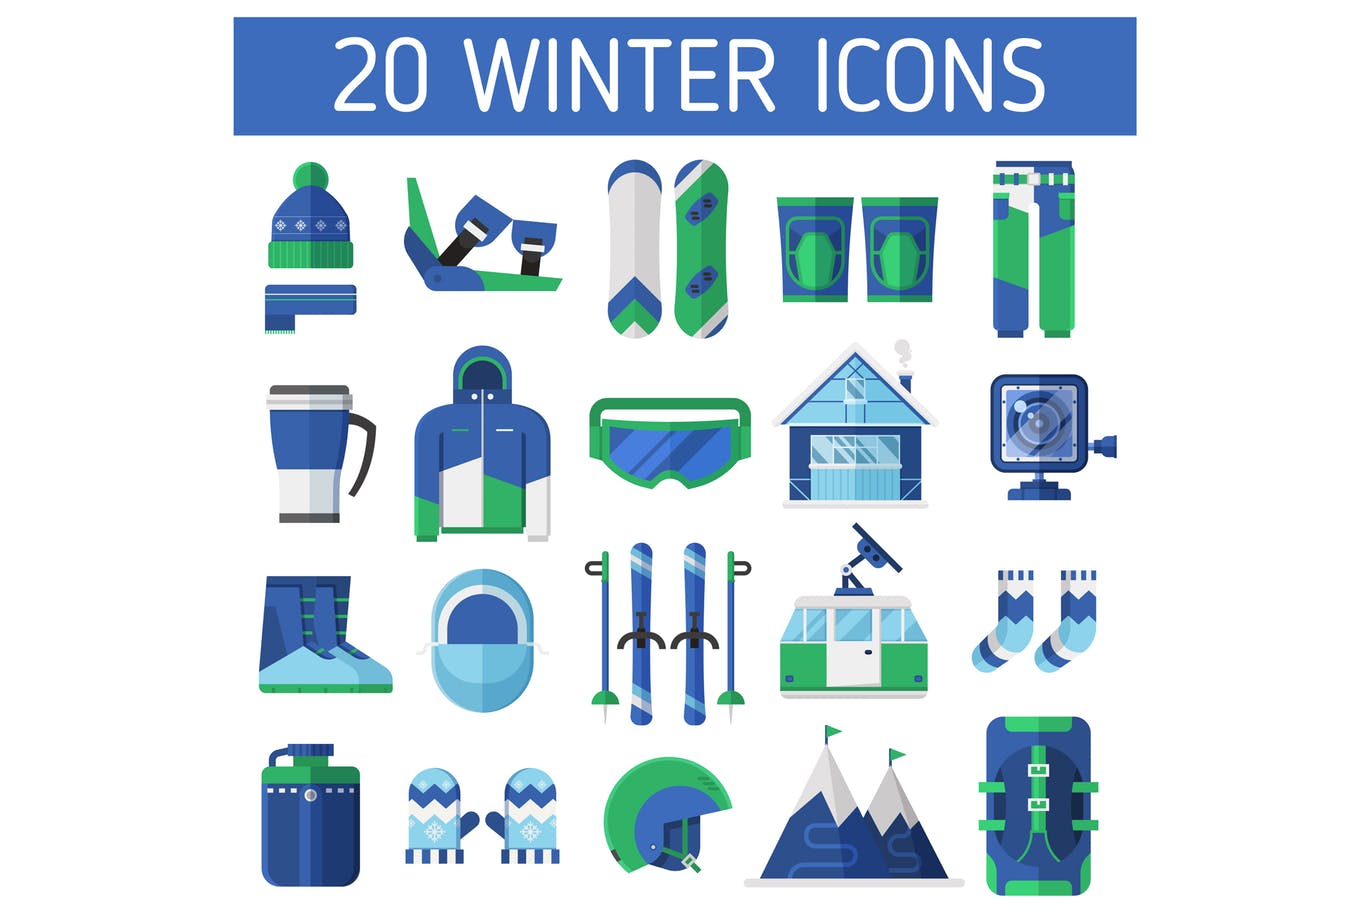 冬天滑雪体育运动主题矢量图标素材 Winter Ski Resort Icons插图